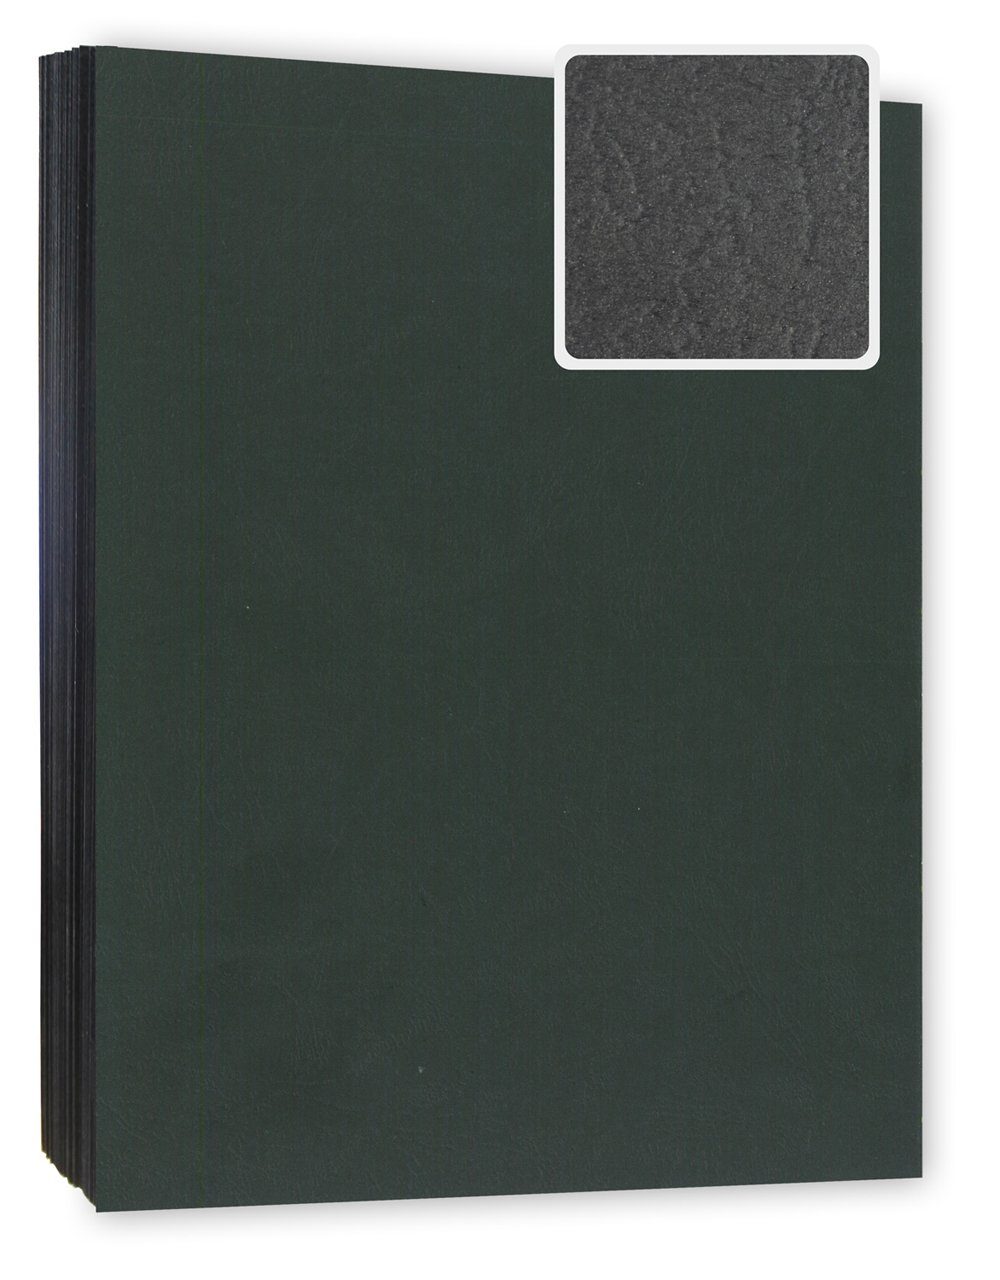 Kopierladen Berlin Papierkarton Bindekarton / Deckblatt, DIN A4 240 g/m², 100 Stück in Lederoptik schwarz